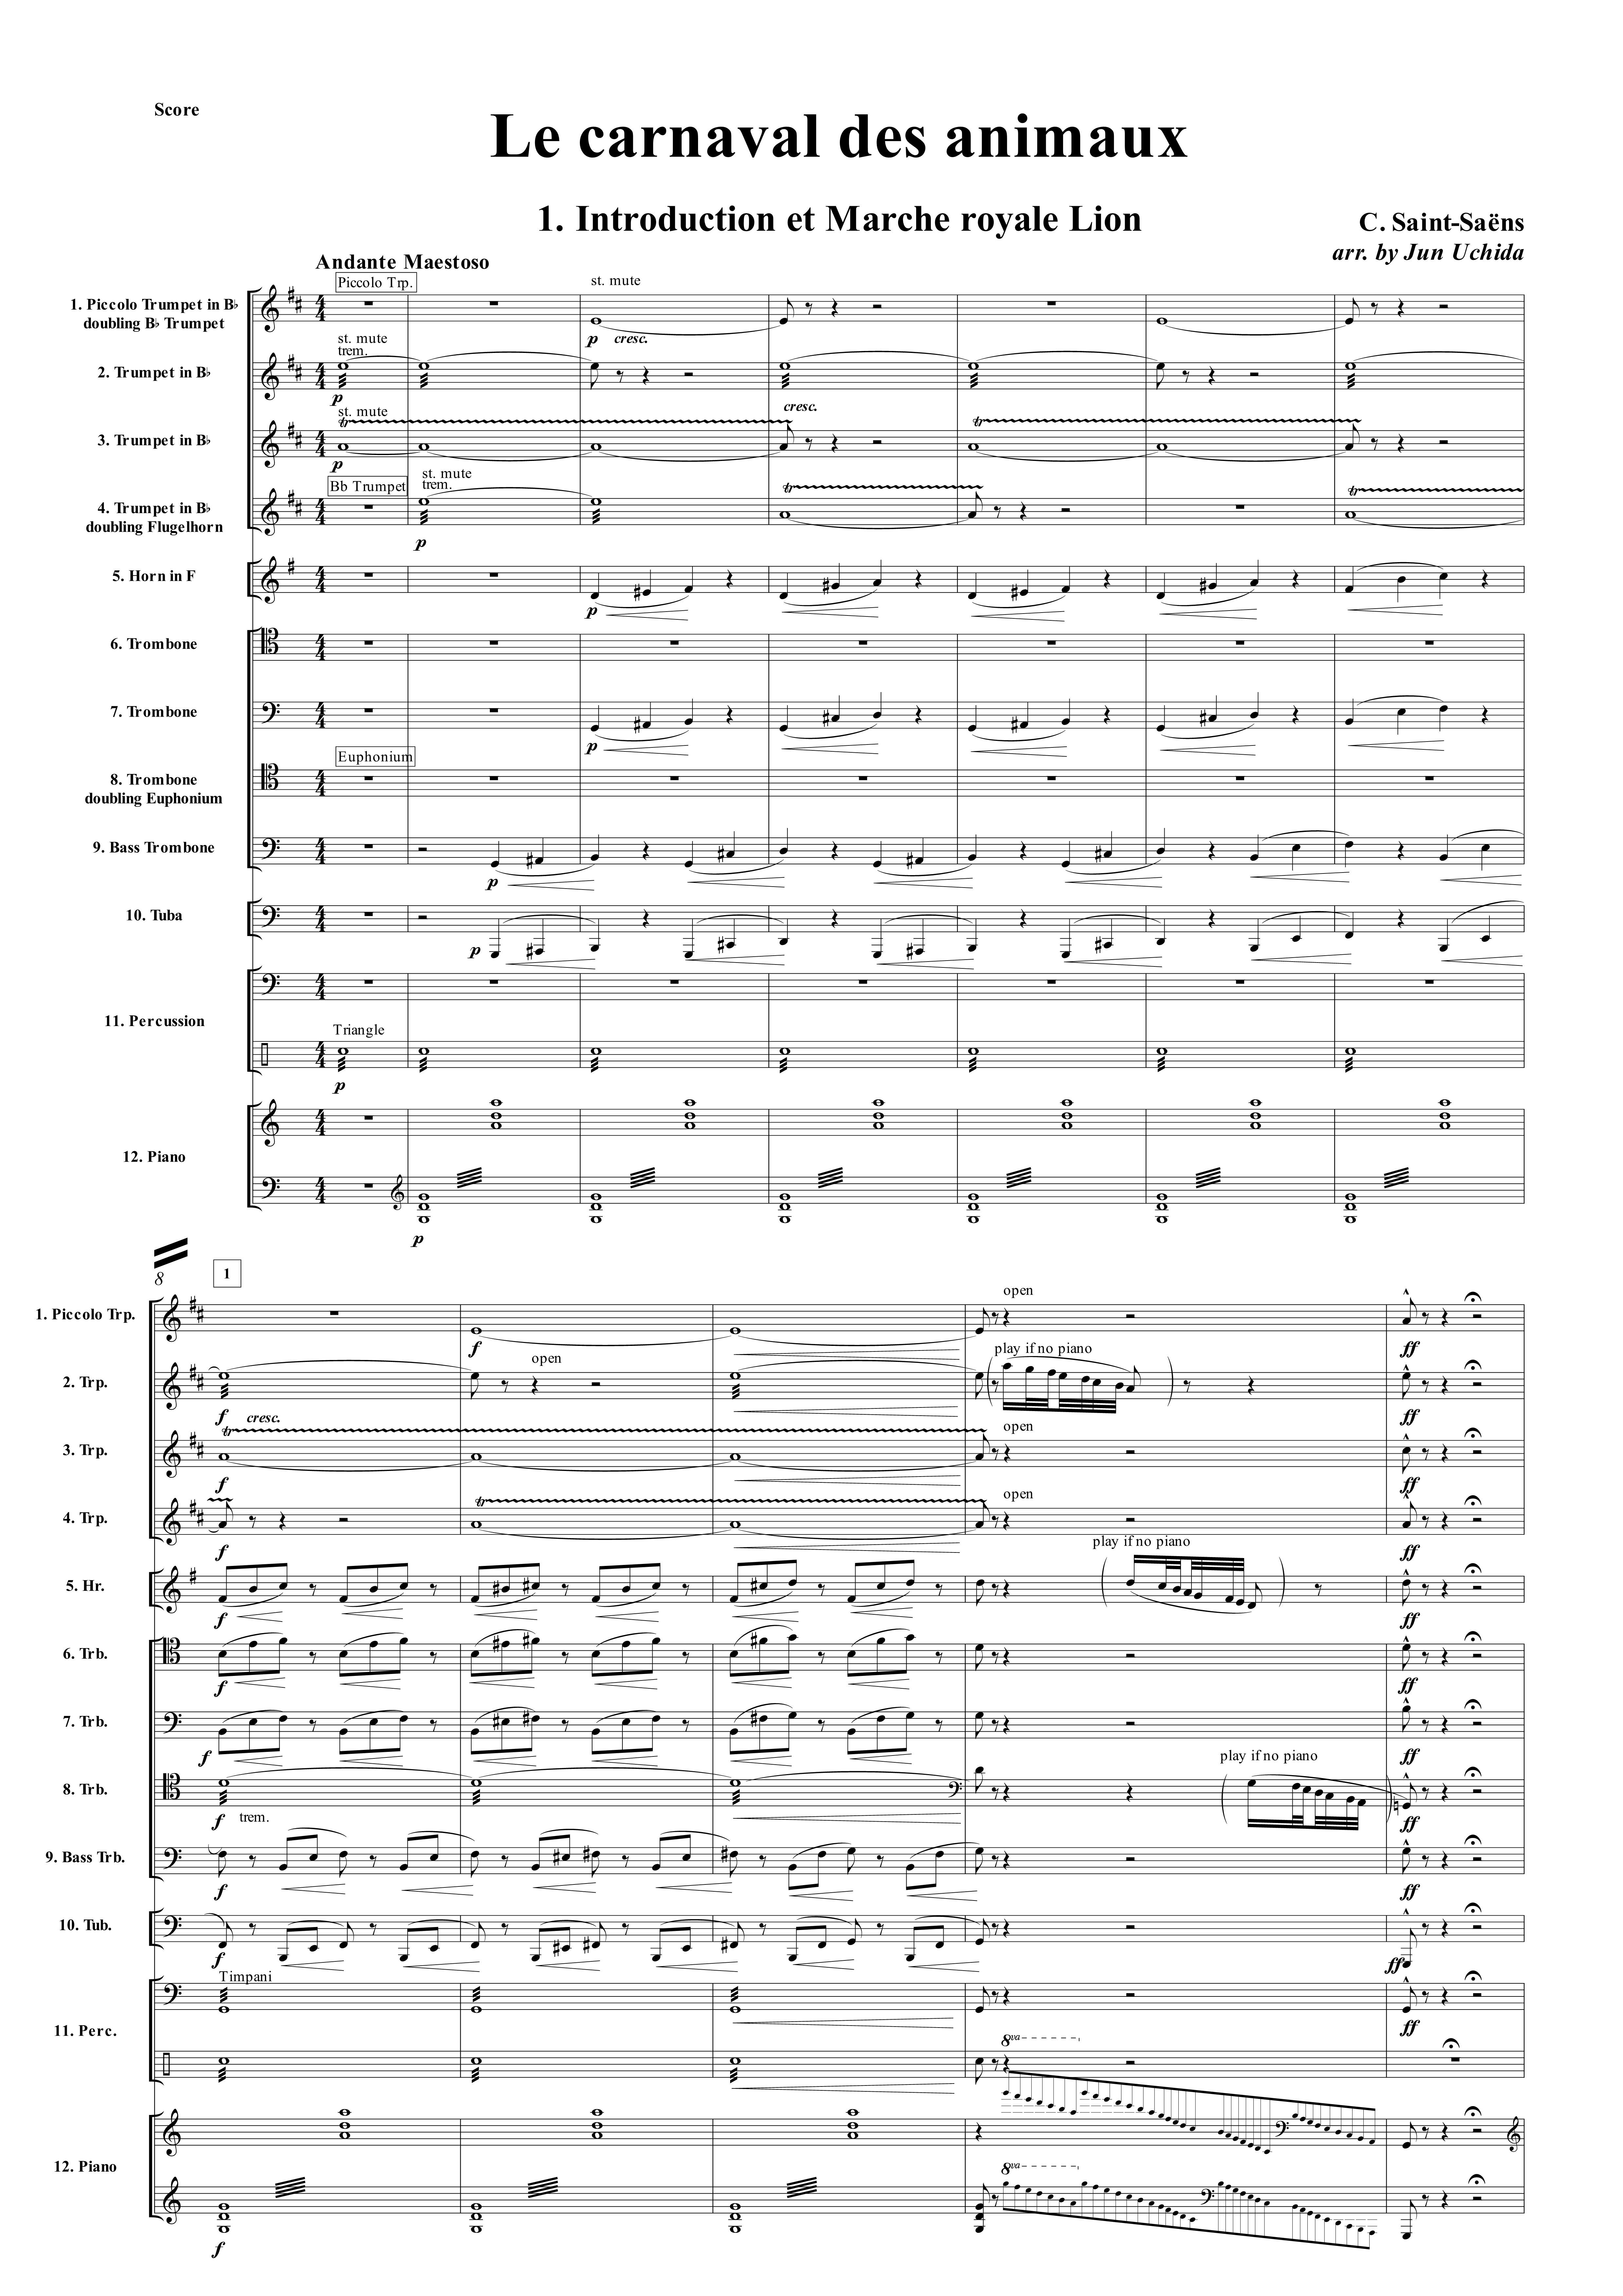 組曲「動物の謝肉祭」 (サン＝サーンス) 金管十重奏 金管アンサンブル楽譜 NABEO Music Library